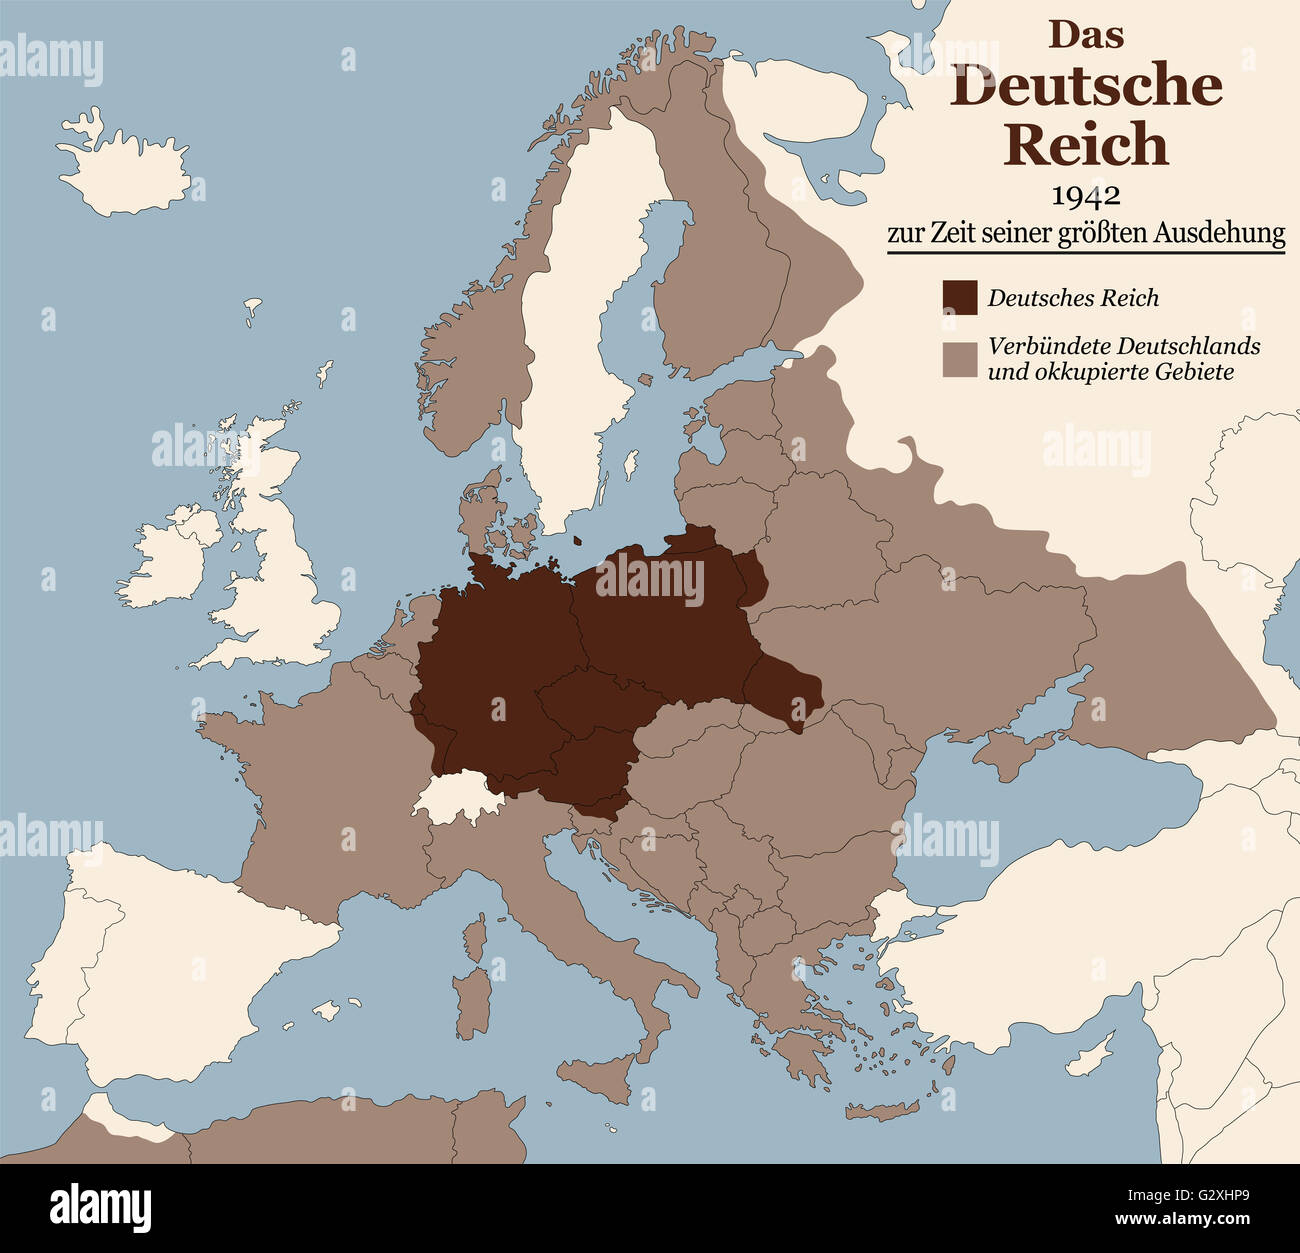 Terzo Reich nel momento della sua massima espansione nel 1942. Mappa della Germania nazista in Europa nella Seconda Guerra Mondiale. Etichettatura in tedesco! Foto Stock